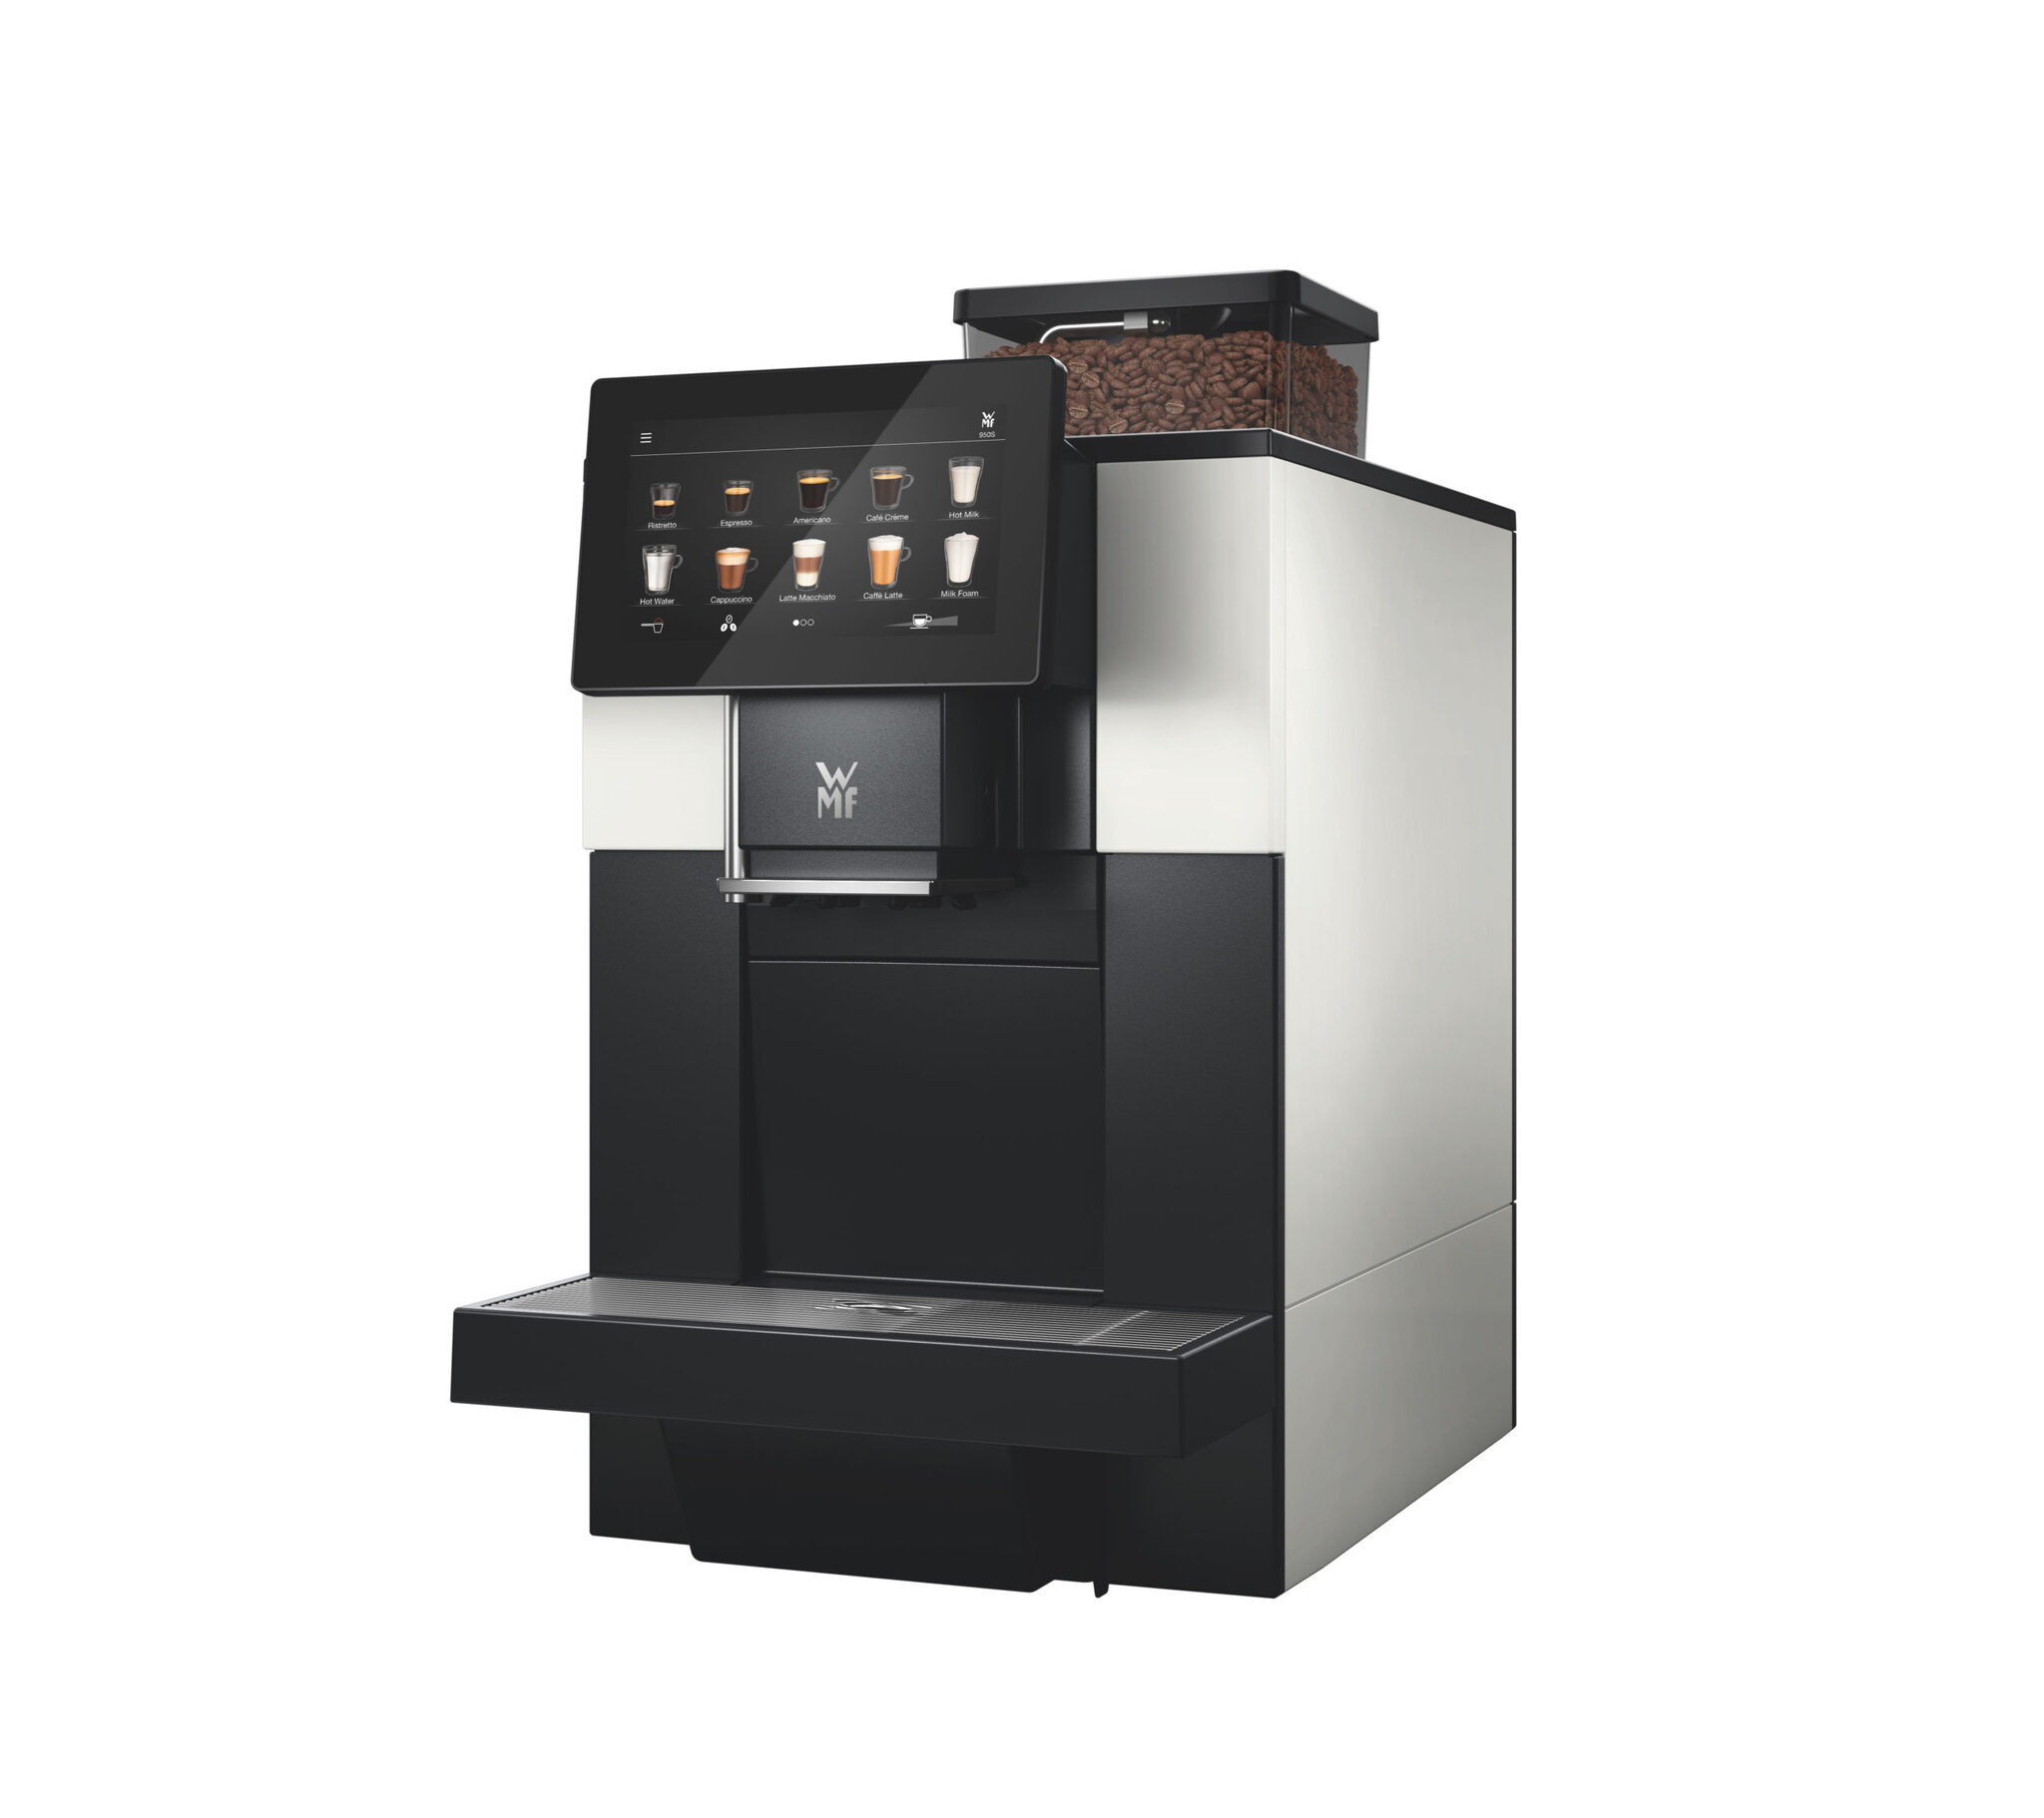 Суперавтоматическая зерновая кофемашина WMF 950 S   в аренду 